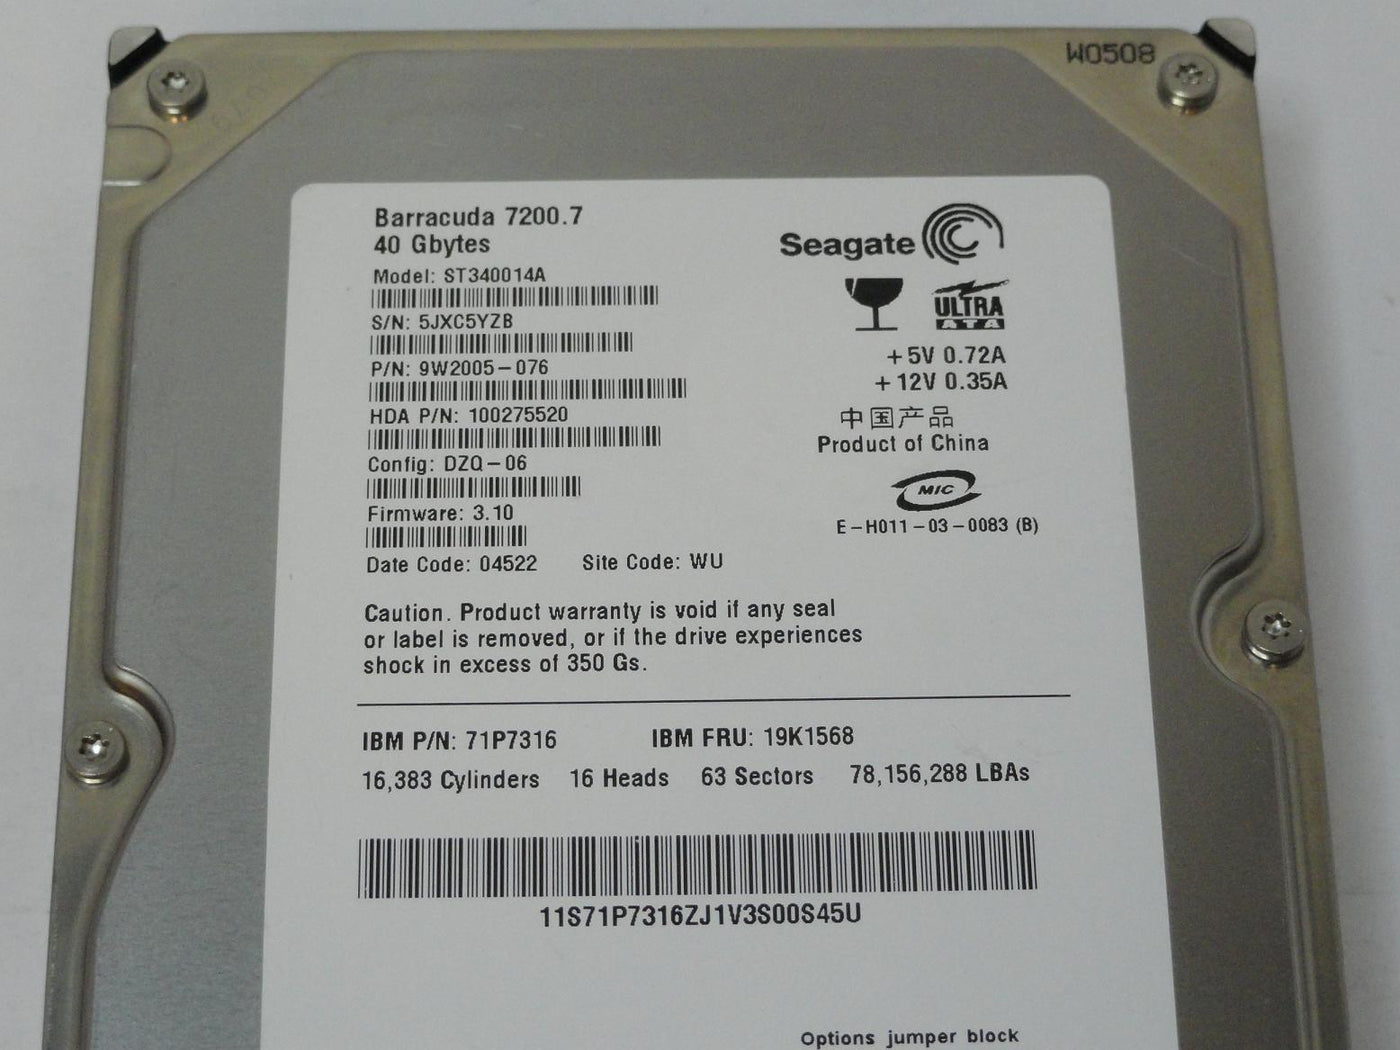 PR15474_9W2005-076_Seagate IBM 40Gb IDE 7200rpm 3.5in HDD - Image3